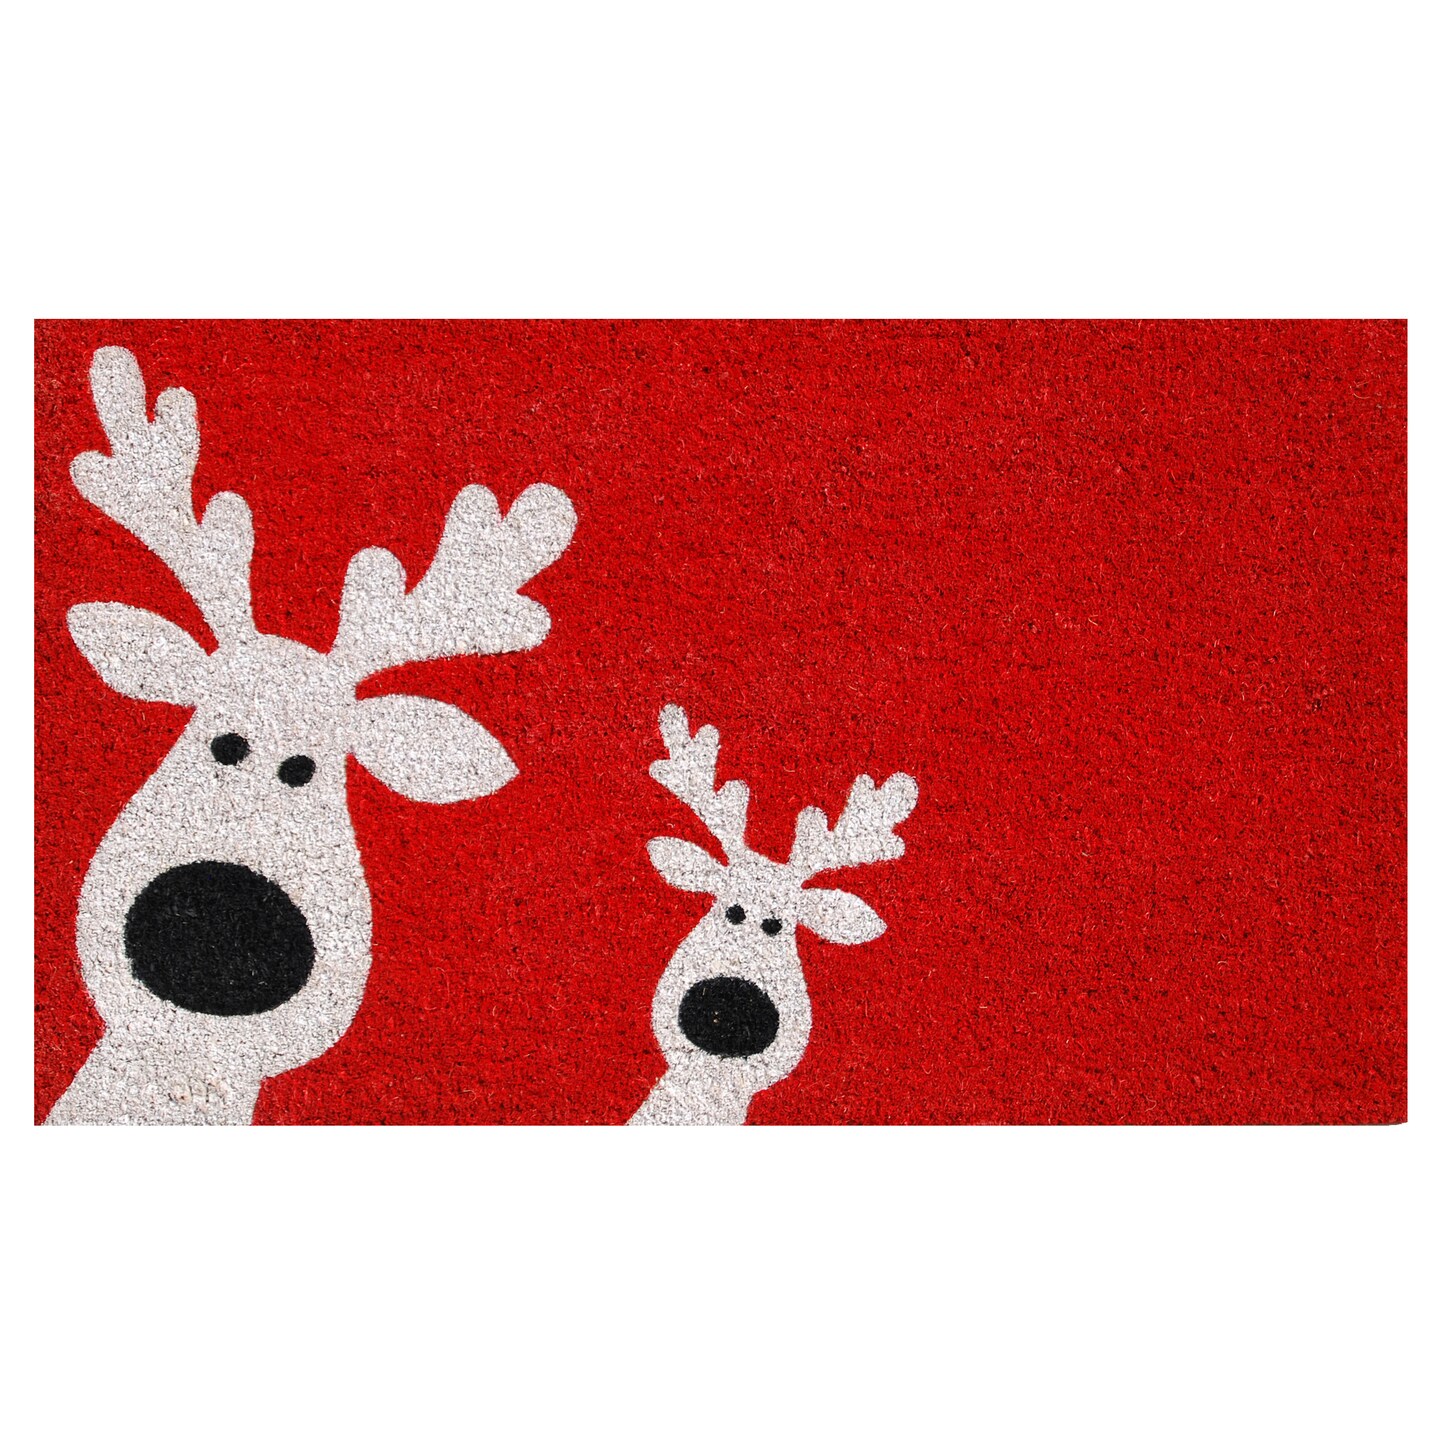 Calloway Mills Peeking Reindeer Doormat